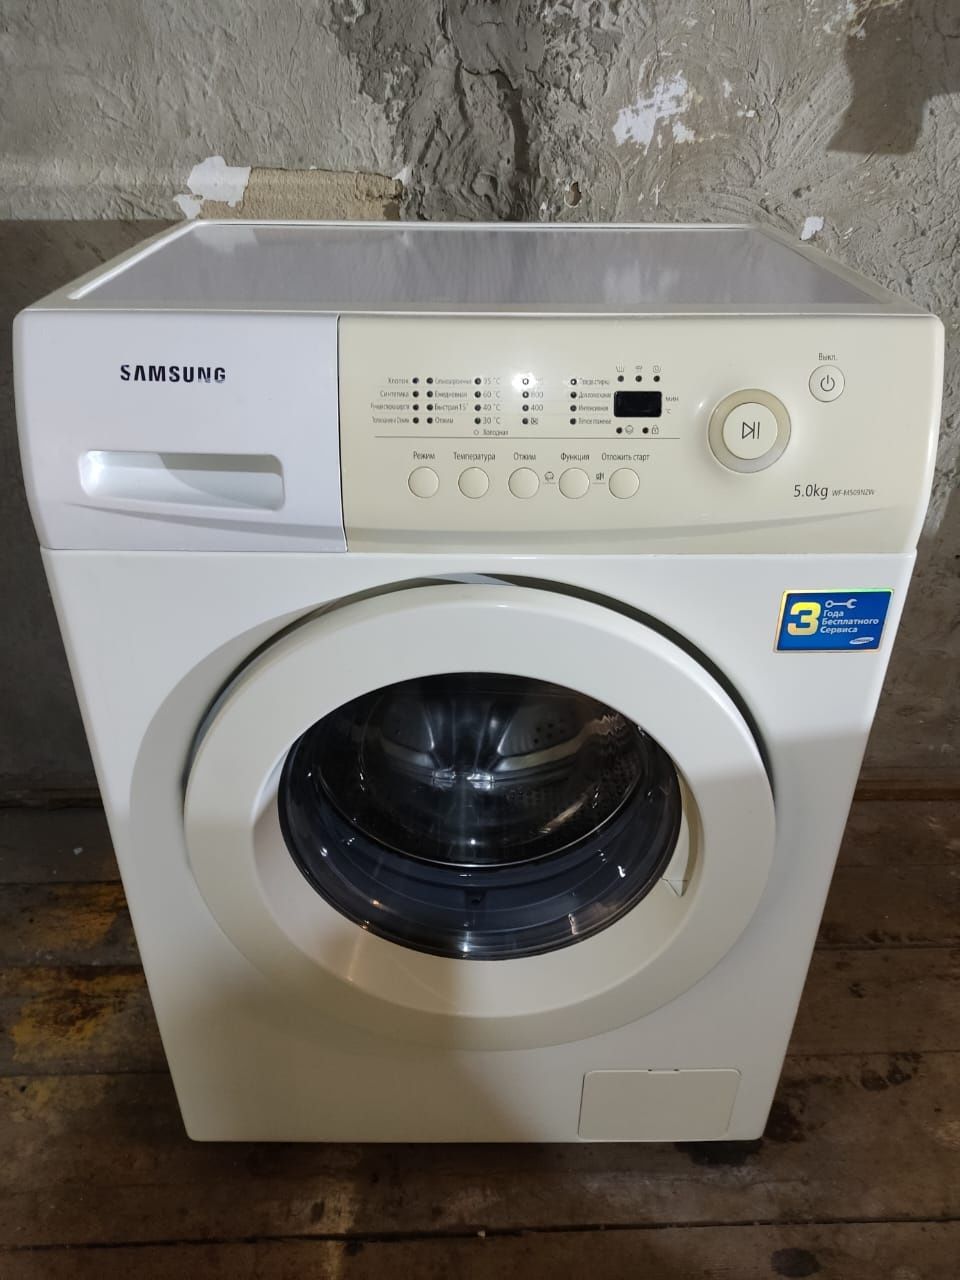 Самсунг 5кг стиральная машина автомат.  Доставка есть круглосуточно